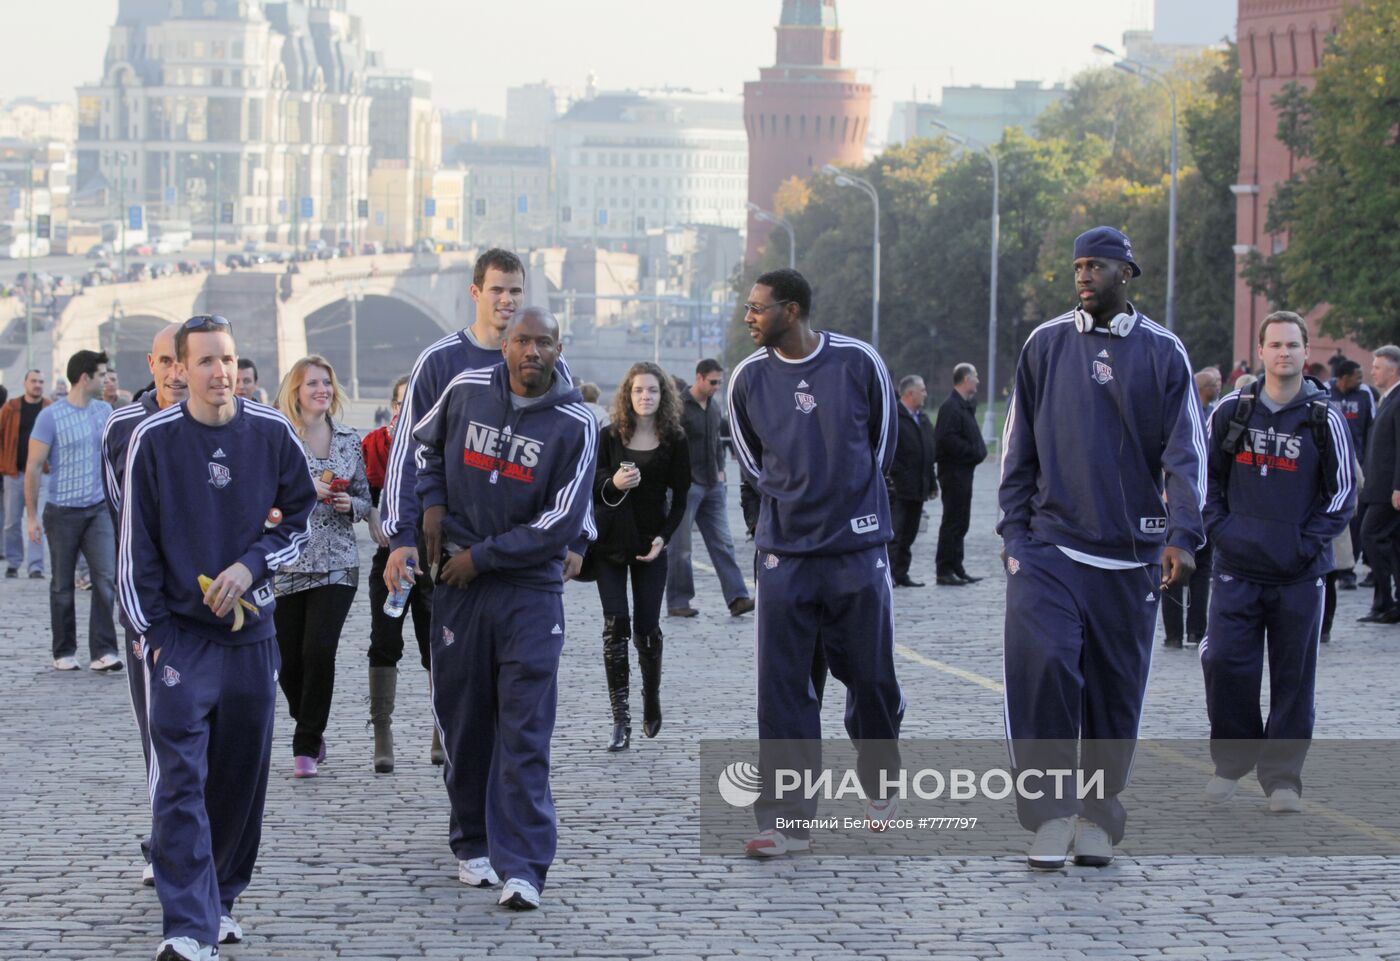 Баскетболисты команды New Jersey Nets в центре Москвы